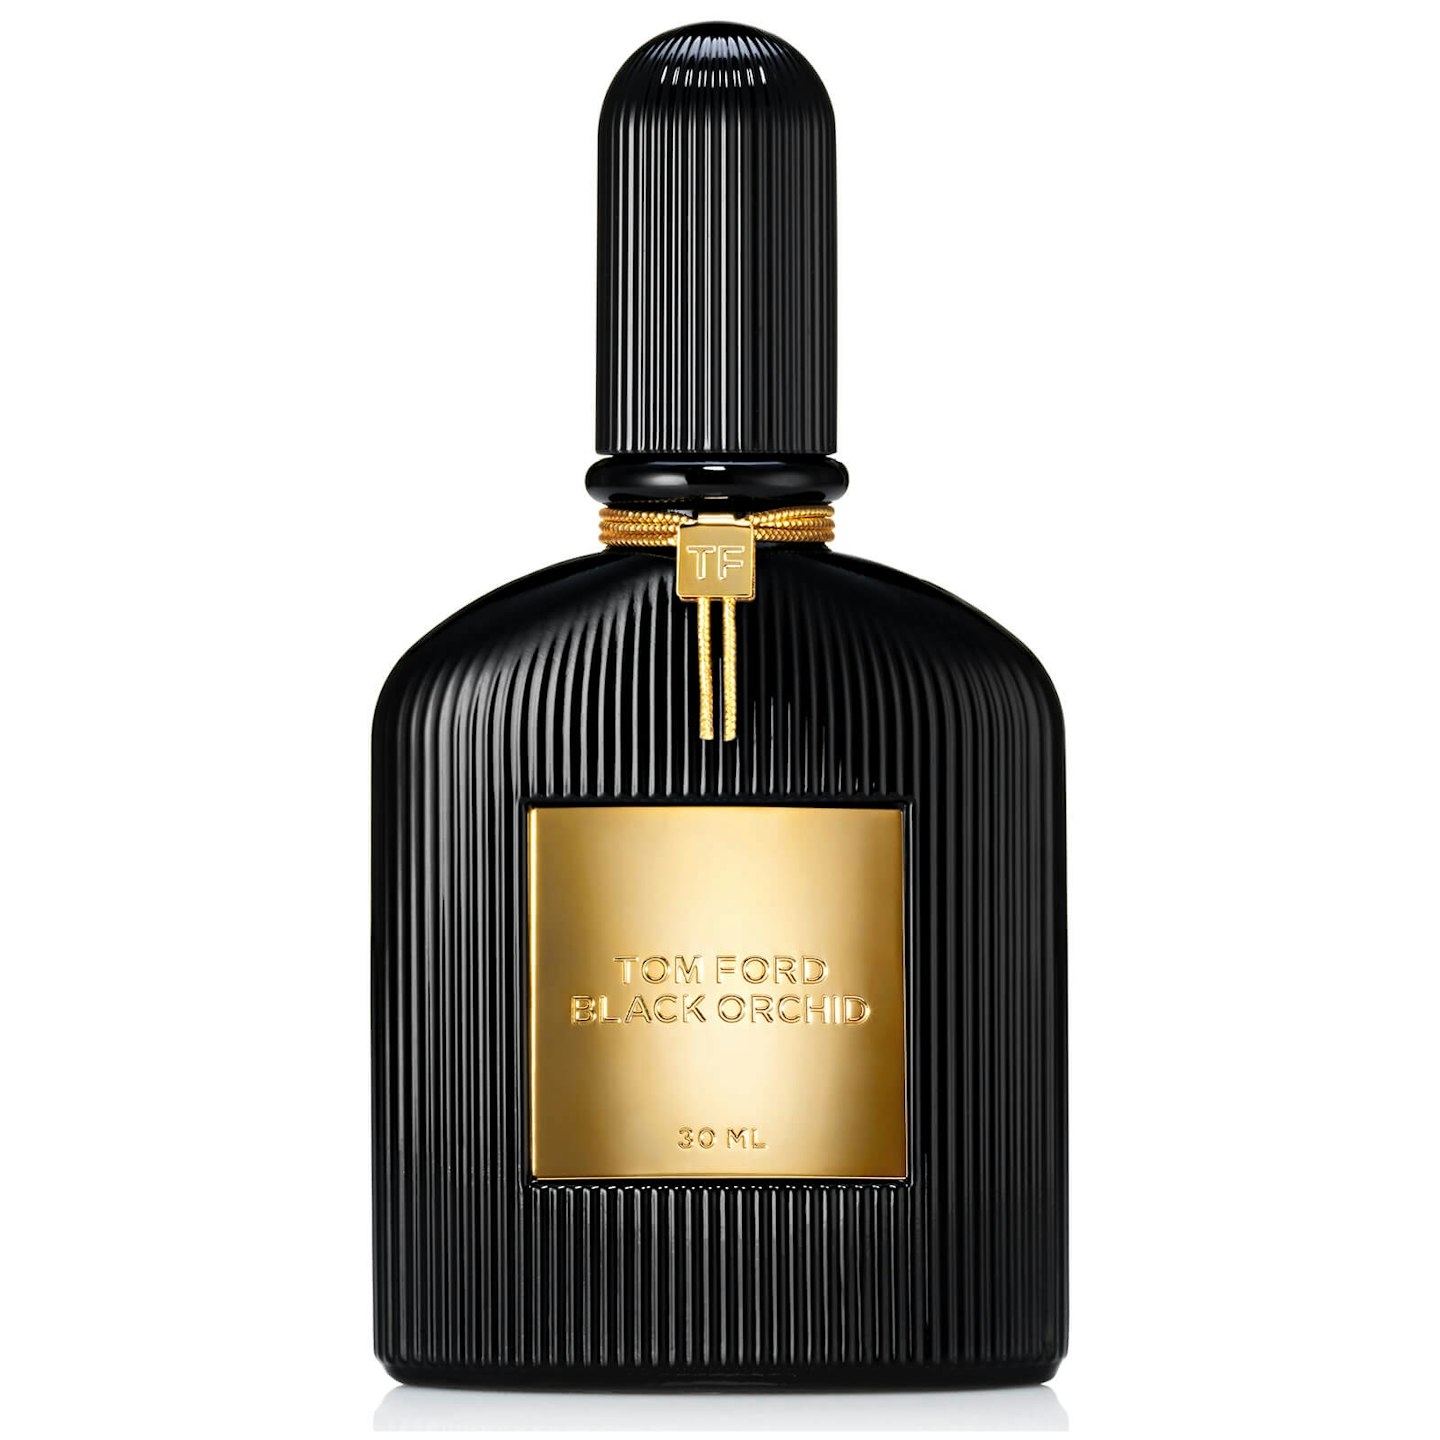 Tom Ford Black Orchid Eau de Parfum 30ml, £59